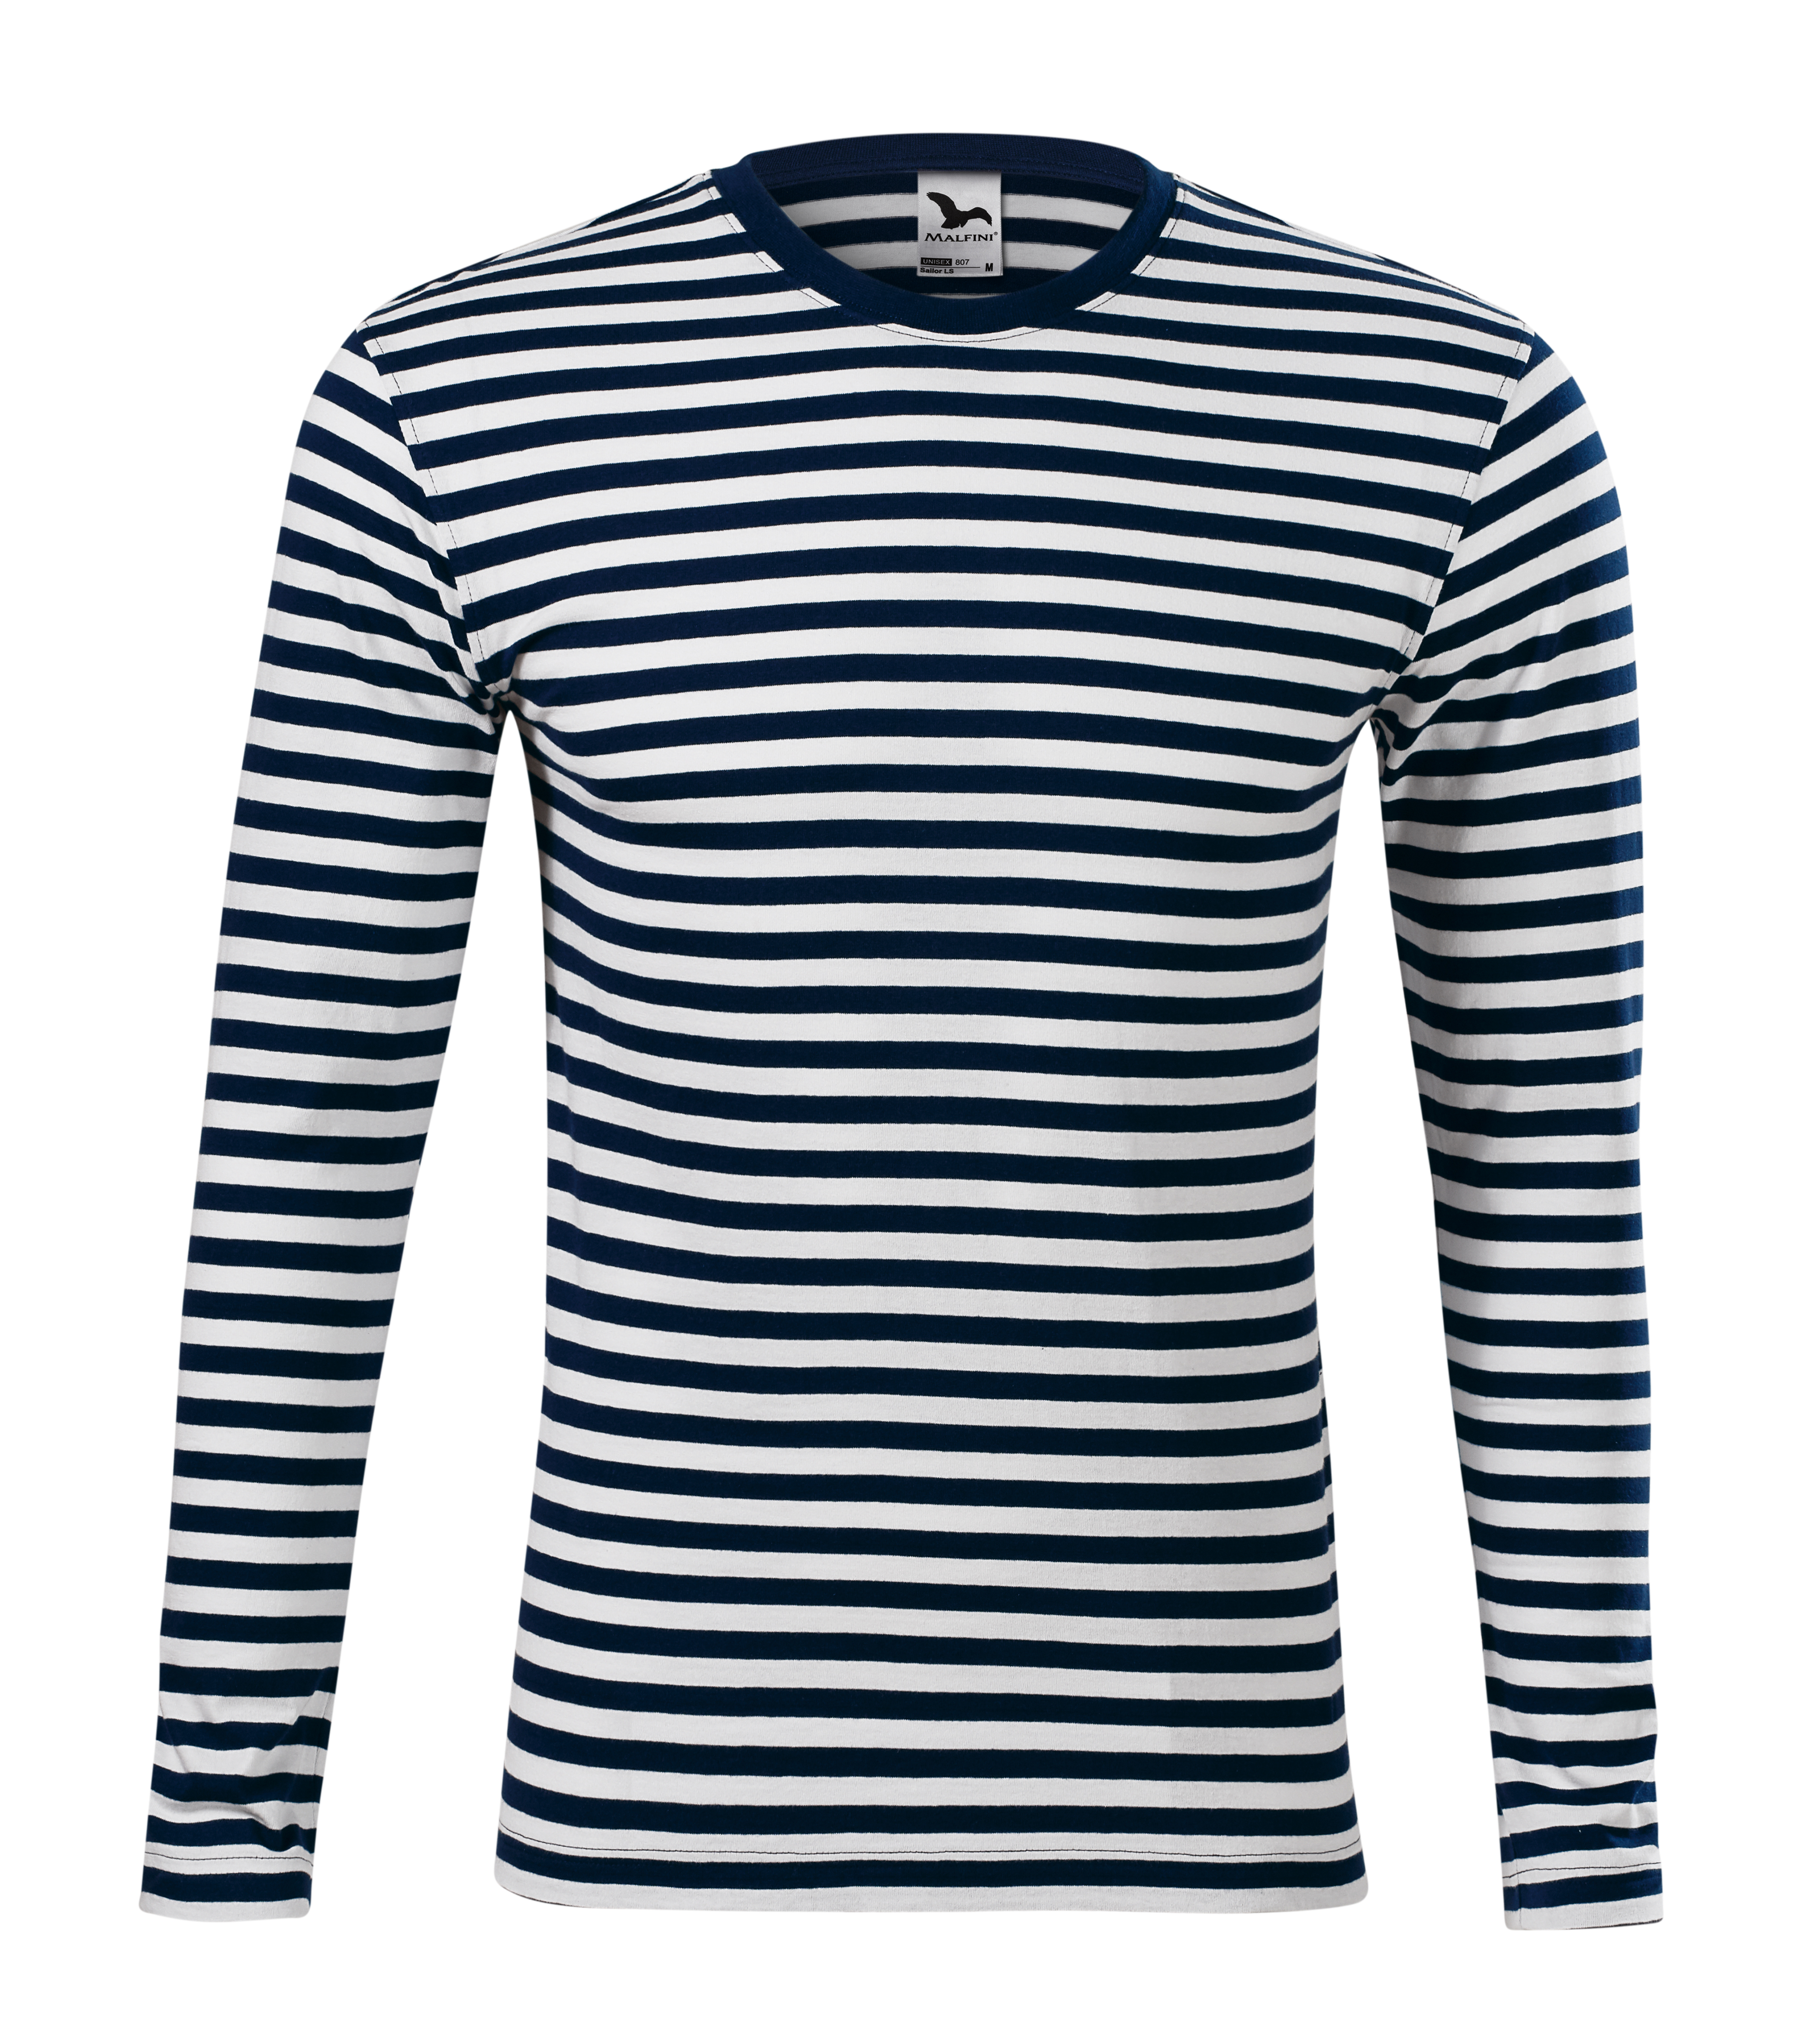 Pánské tričko Malfini Sailor LS námořní modrá